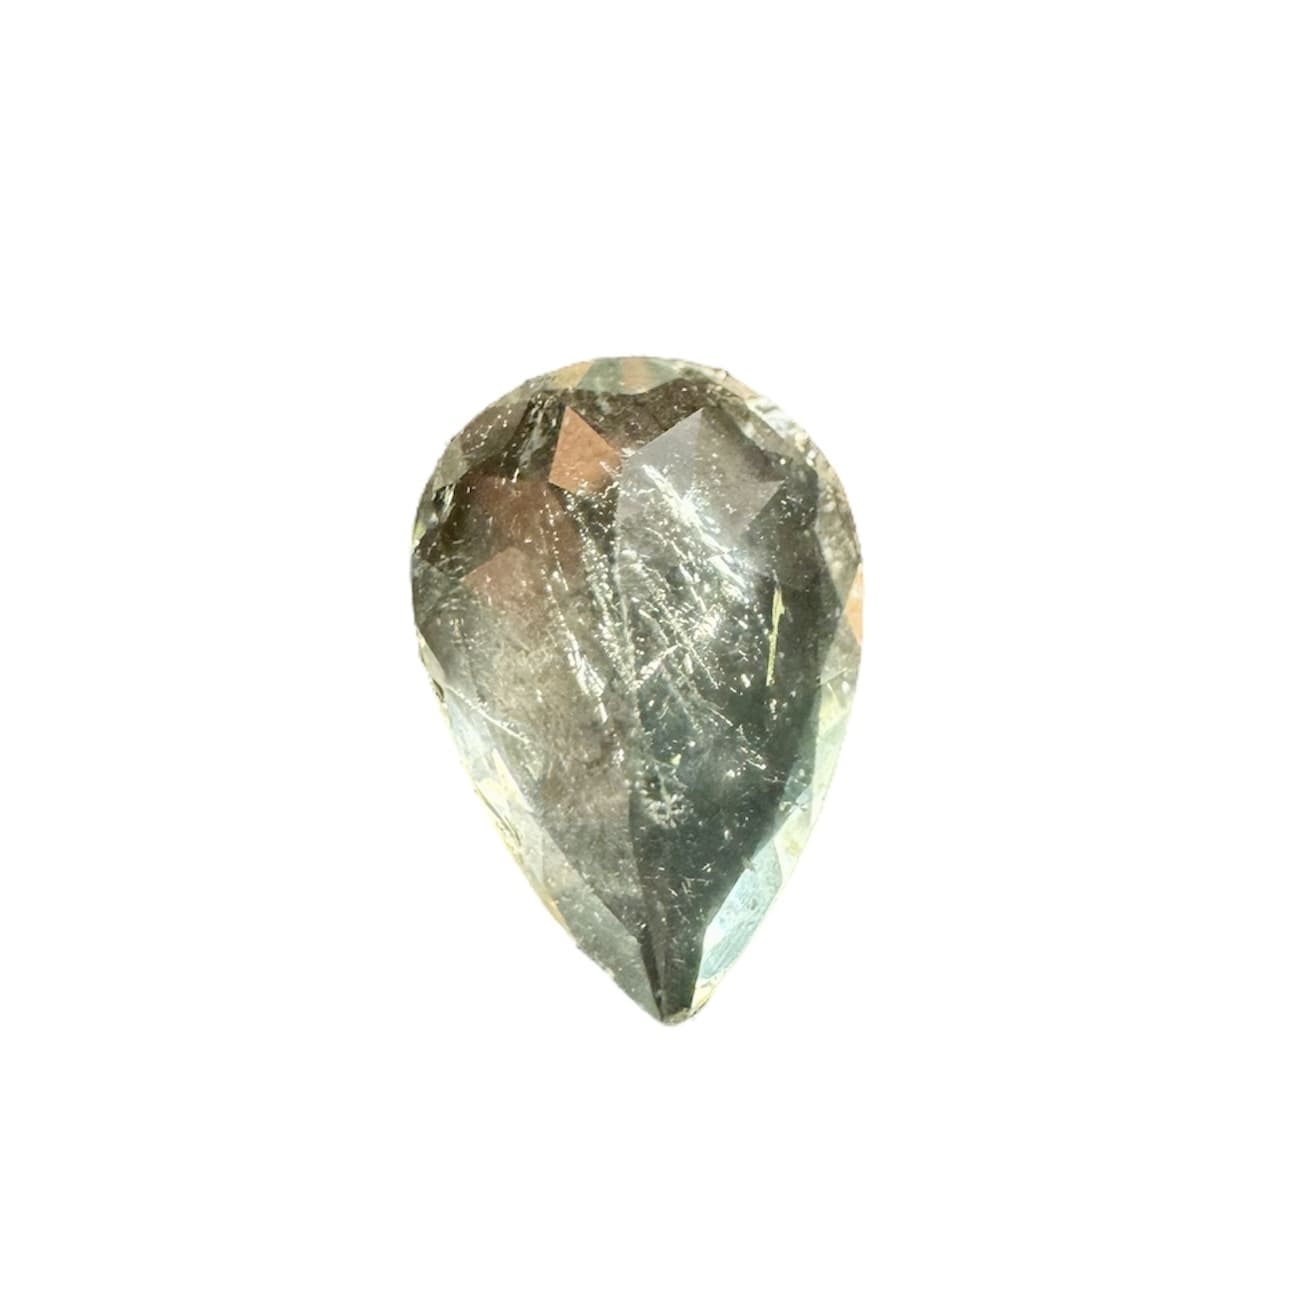 béryl vert pierre gemme de 1,35 carat, avec inclusions